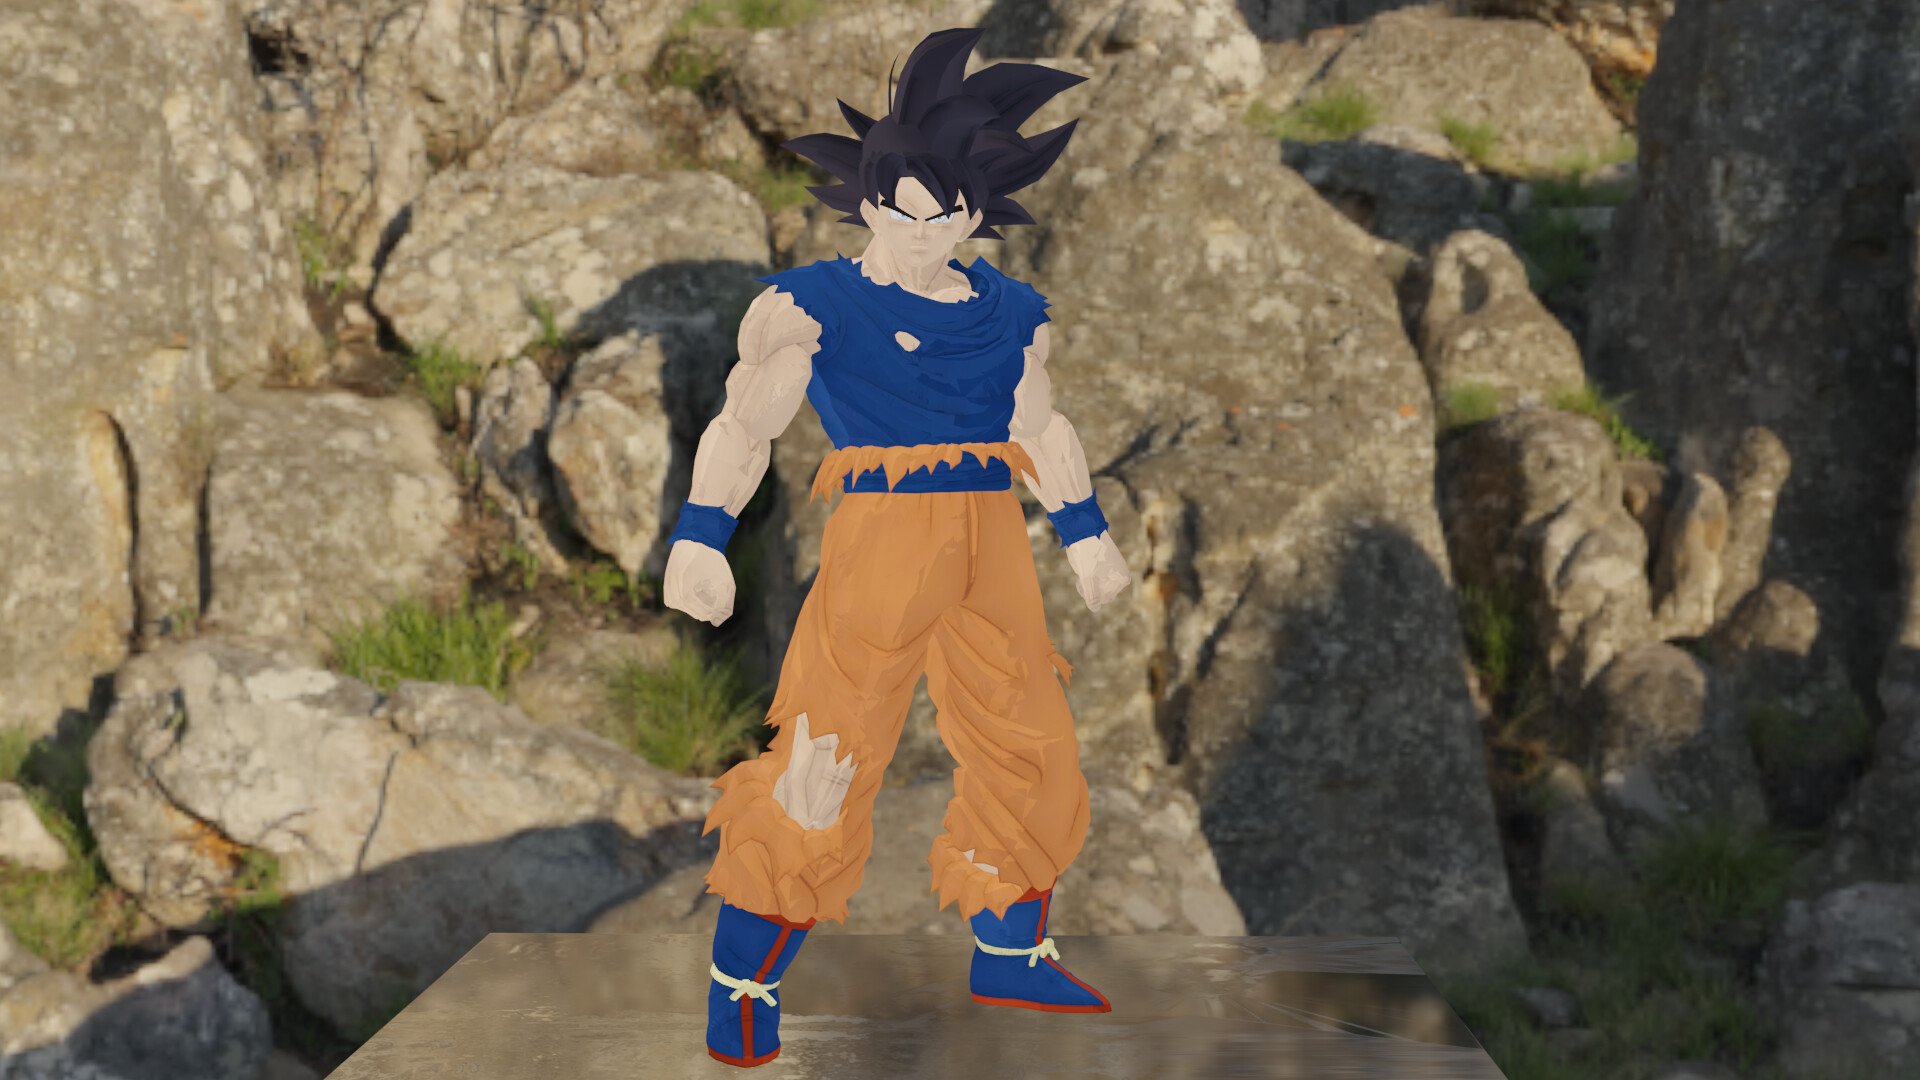 Goku Front 2